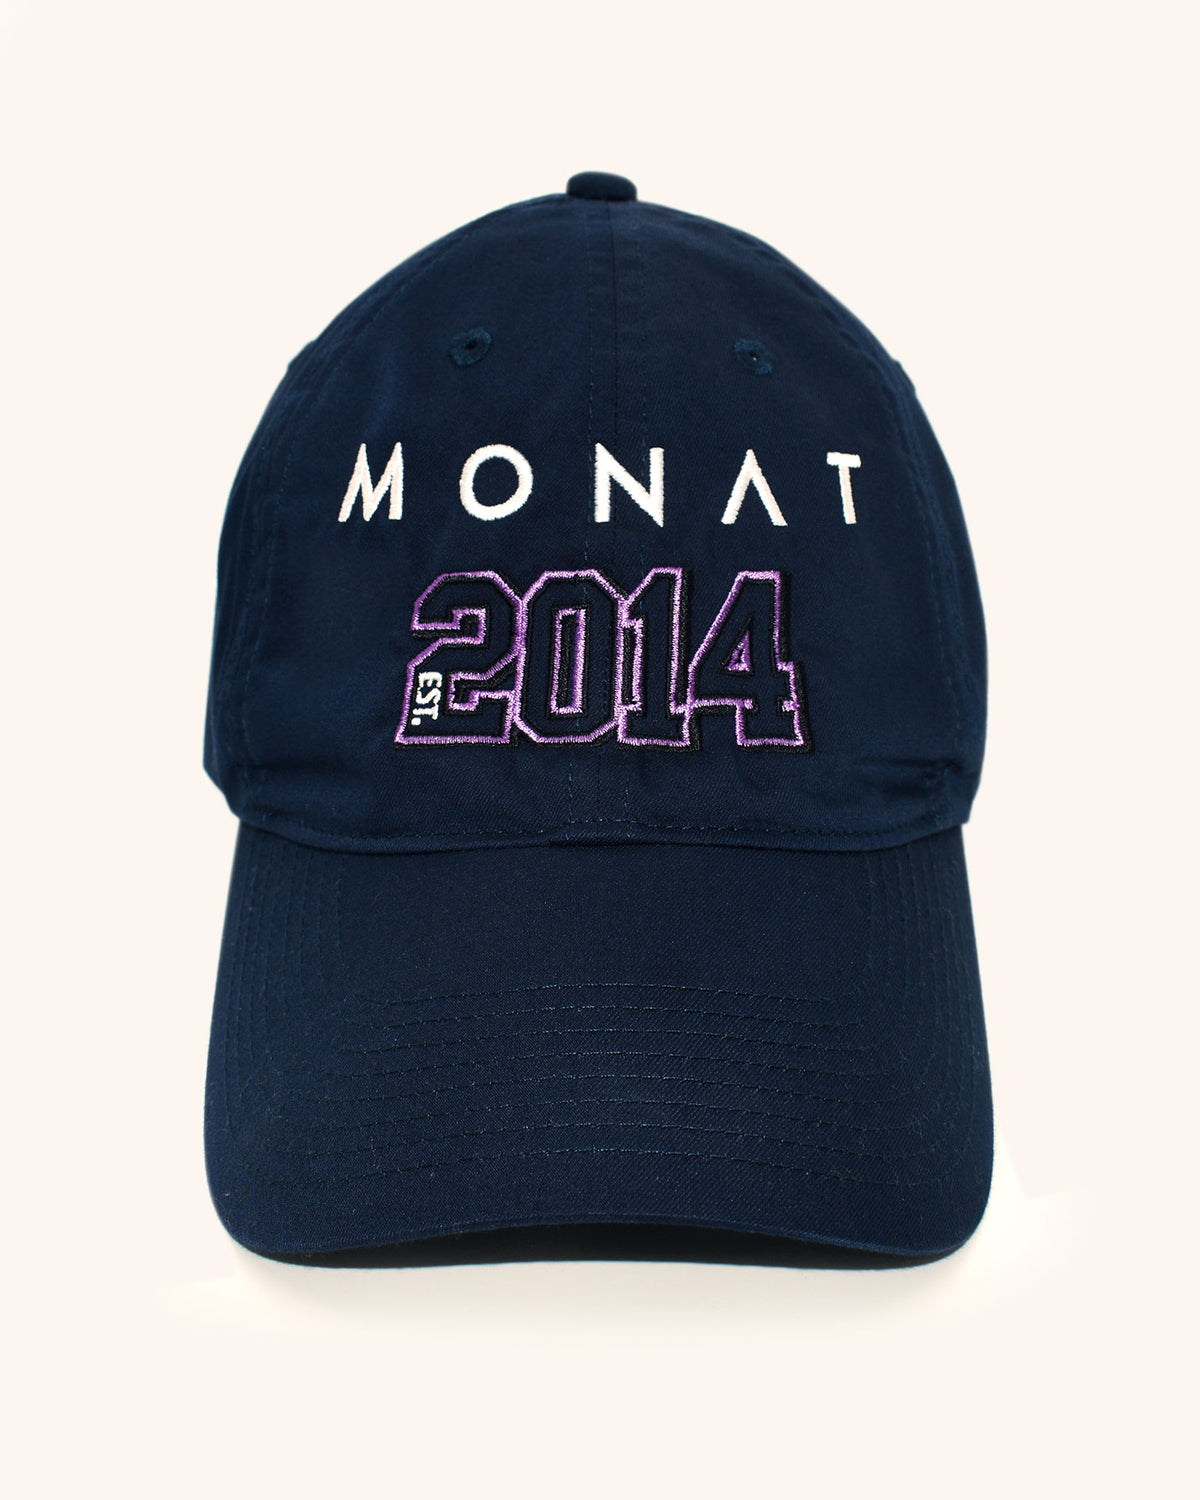 MONAT NIKE HAT - NAVY EST 2014